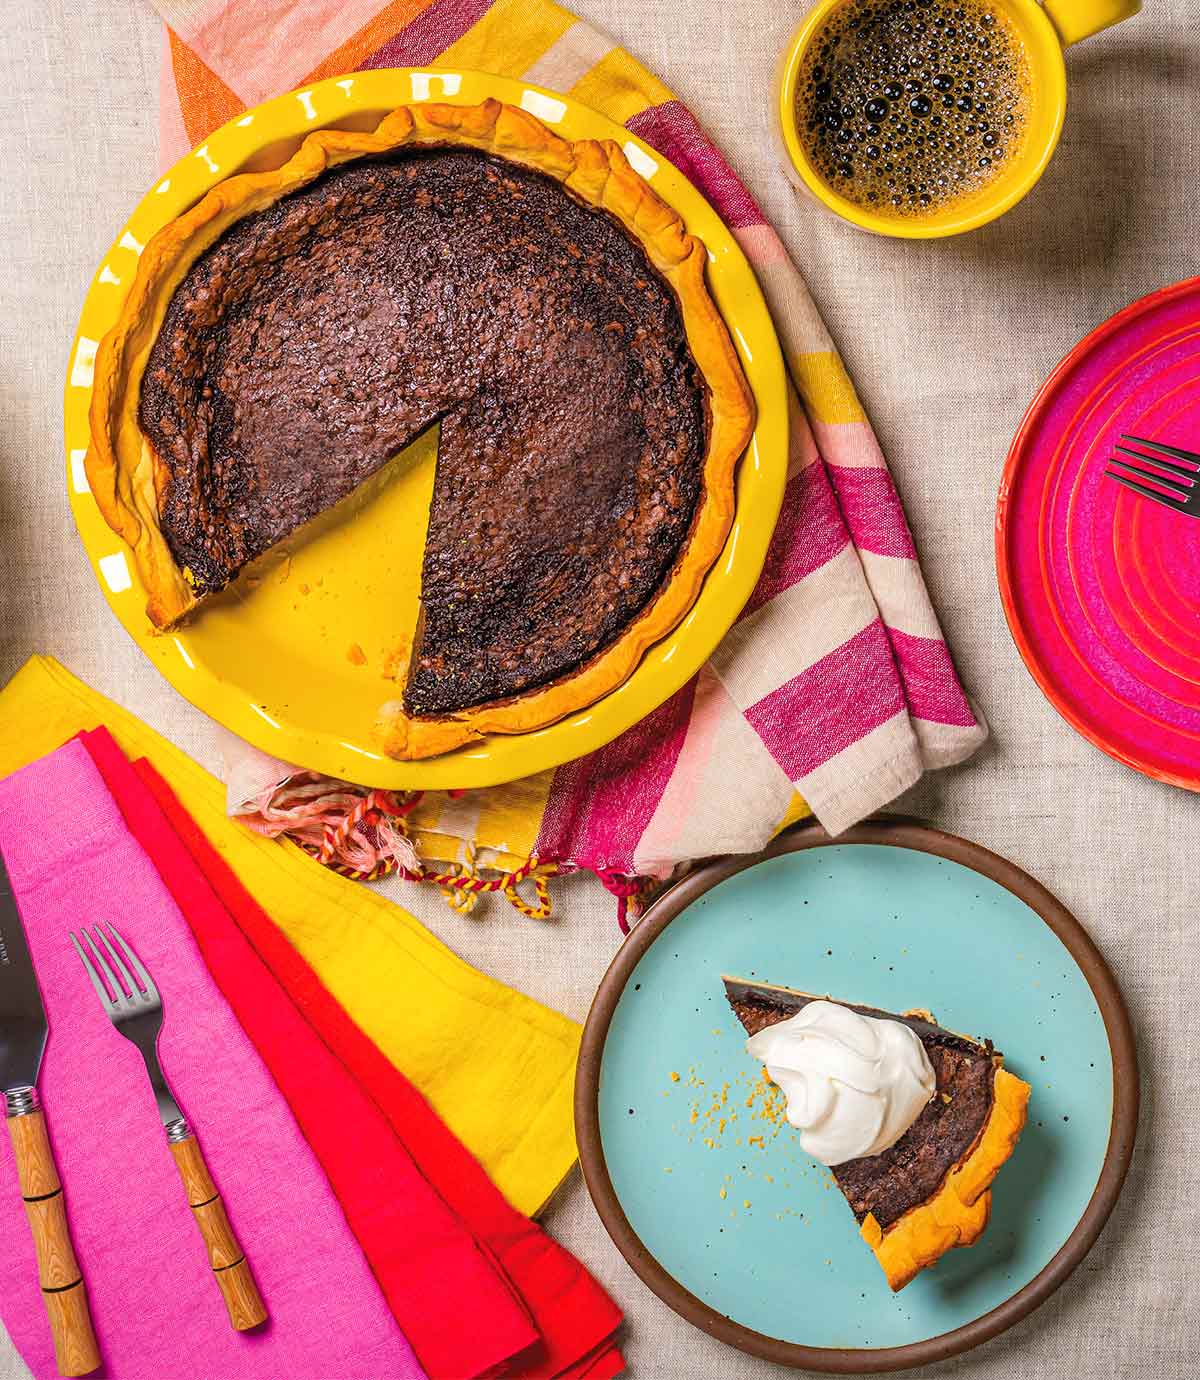 Ett bord med färgglada servetter, en tallrik med en skiva paj, en kopp kaffe och en gul pajtallrik med en chokladkärnmjölkspaj som saknar en skiva.